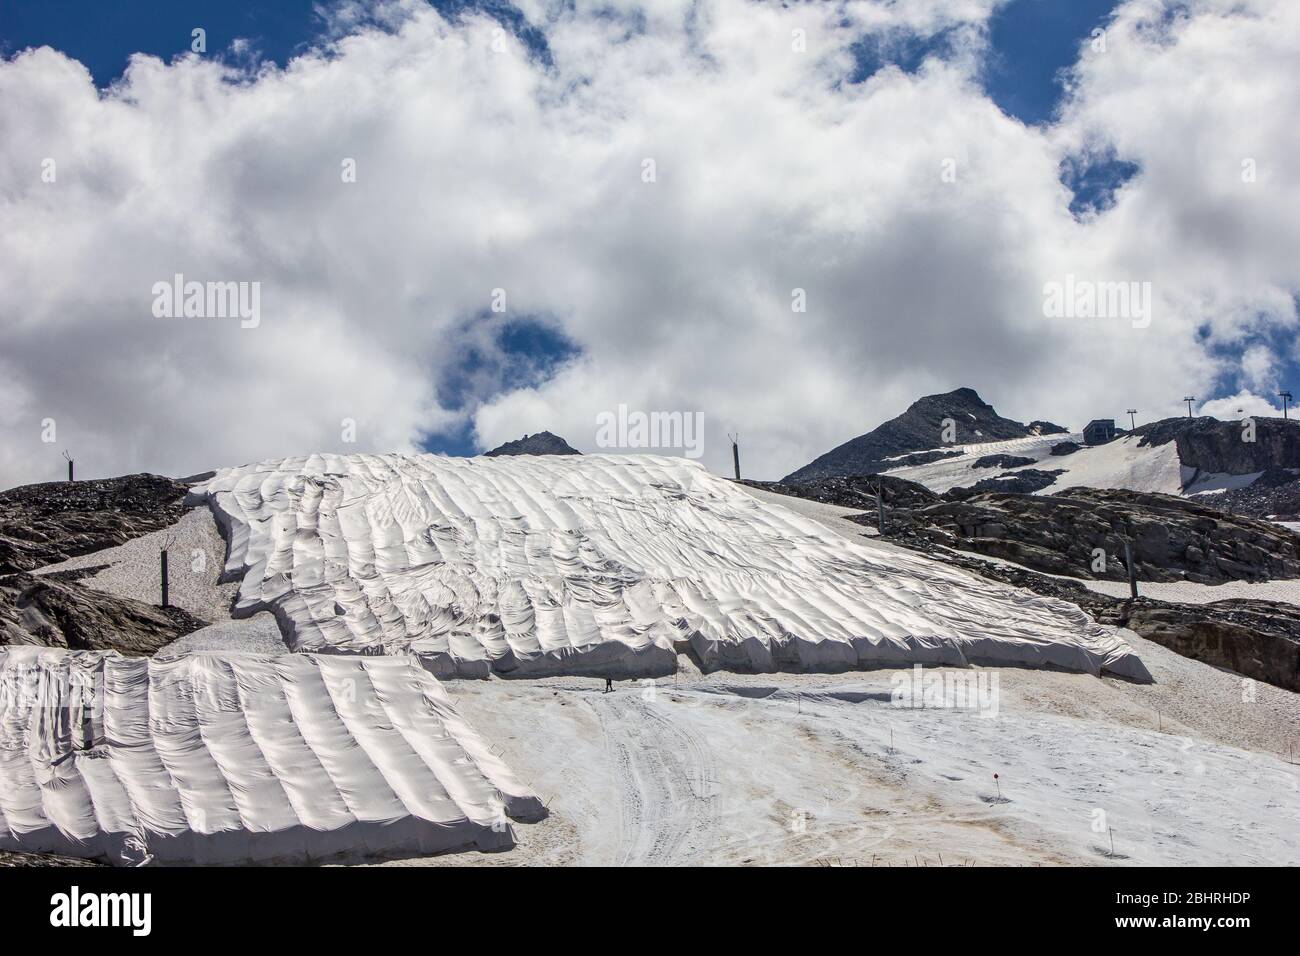 Blick auf den Hintertuxer Gletscher im Sommer, Zillertal, Tirol, Österreich  Stockfotografie - Alamy